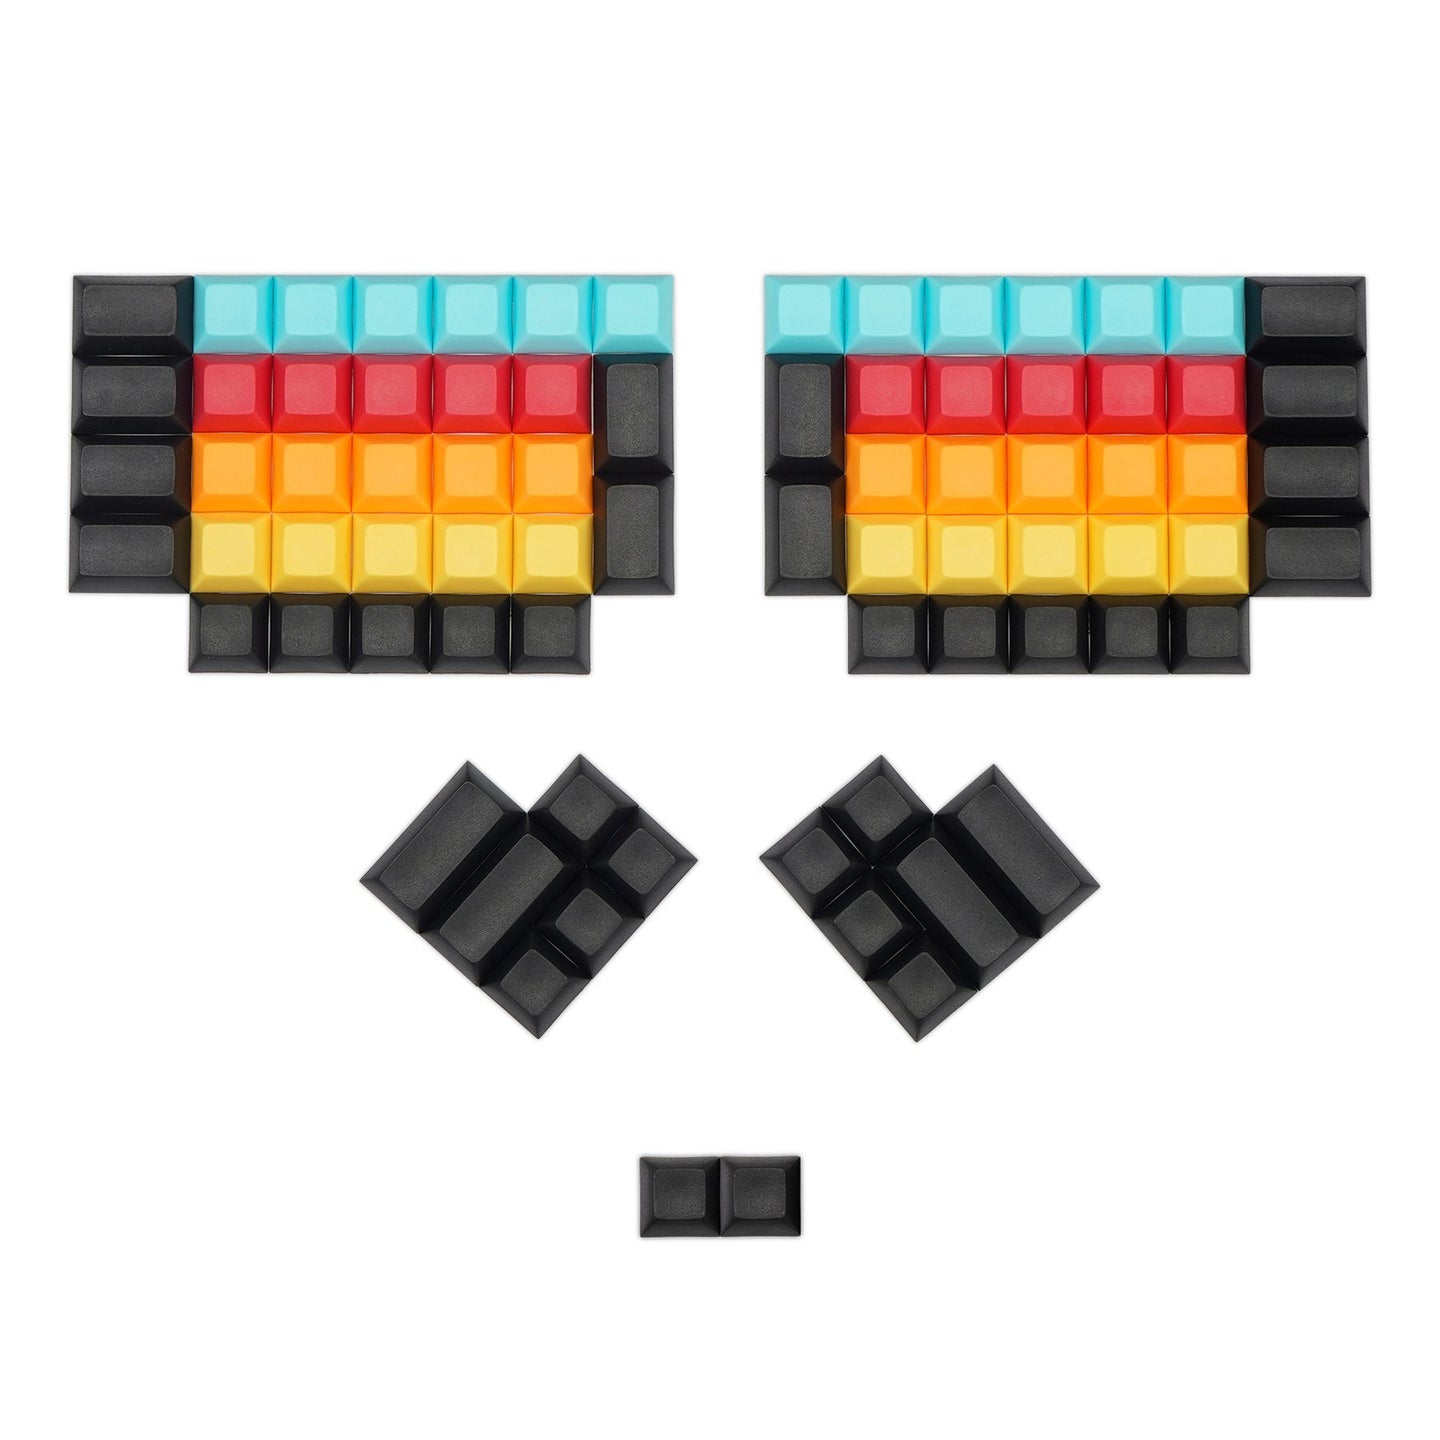 Split DSA Keycaps Multi-colored 